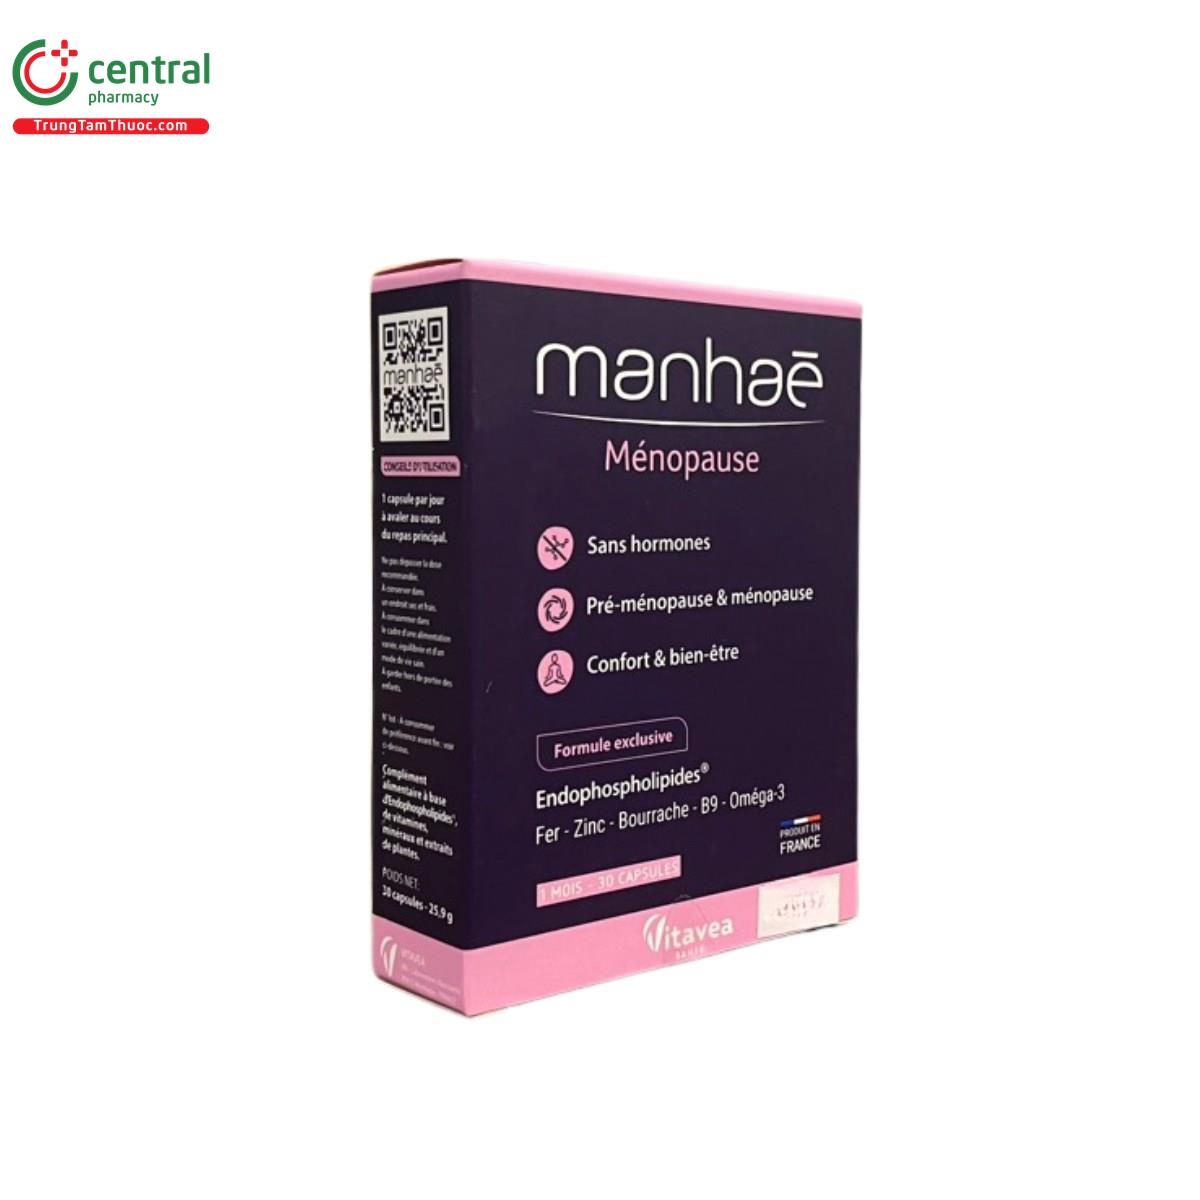 manhae menopause 2 B0043